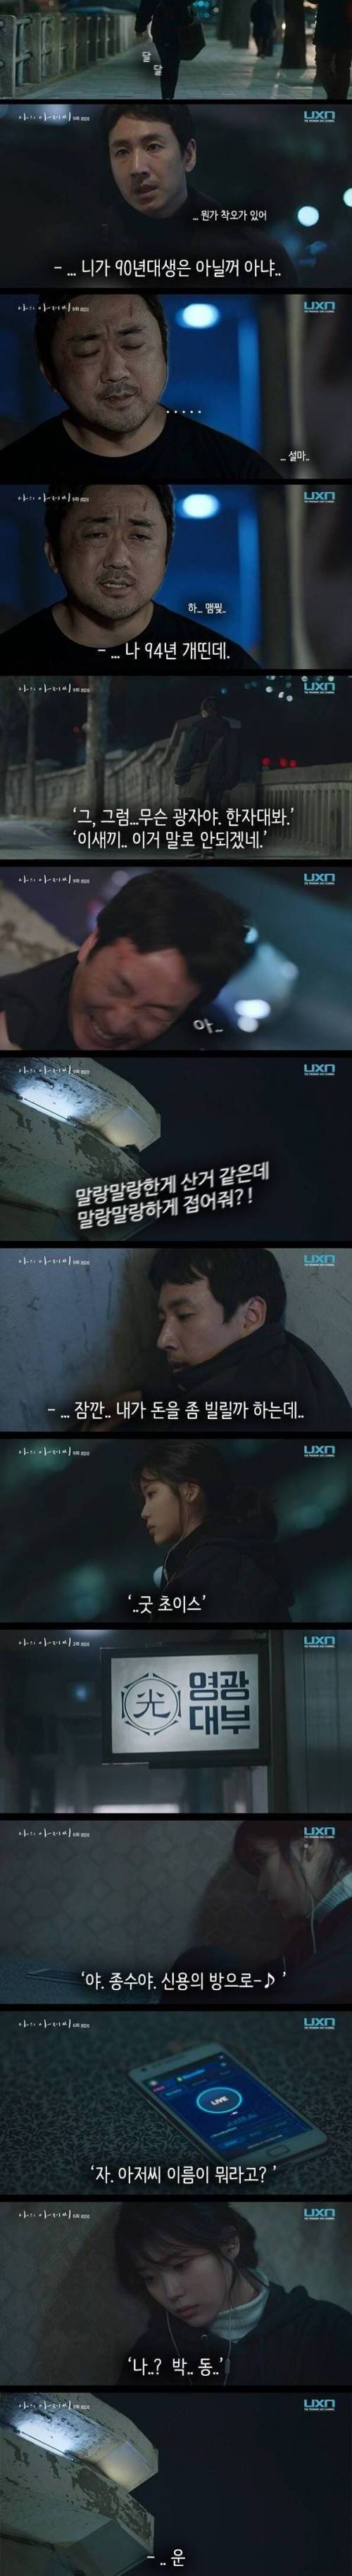 [스압] 드라마 나의 아저씨 - 누가 광일이야?.jpg